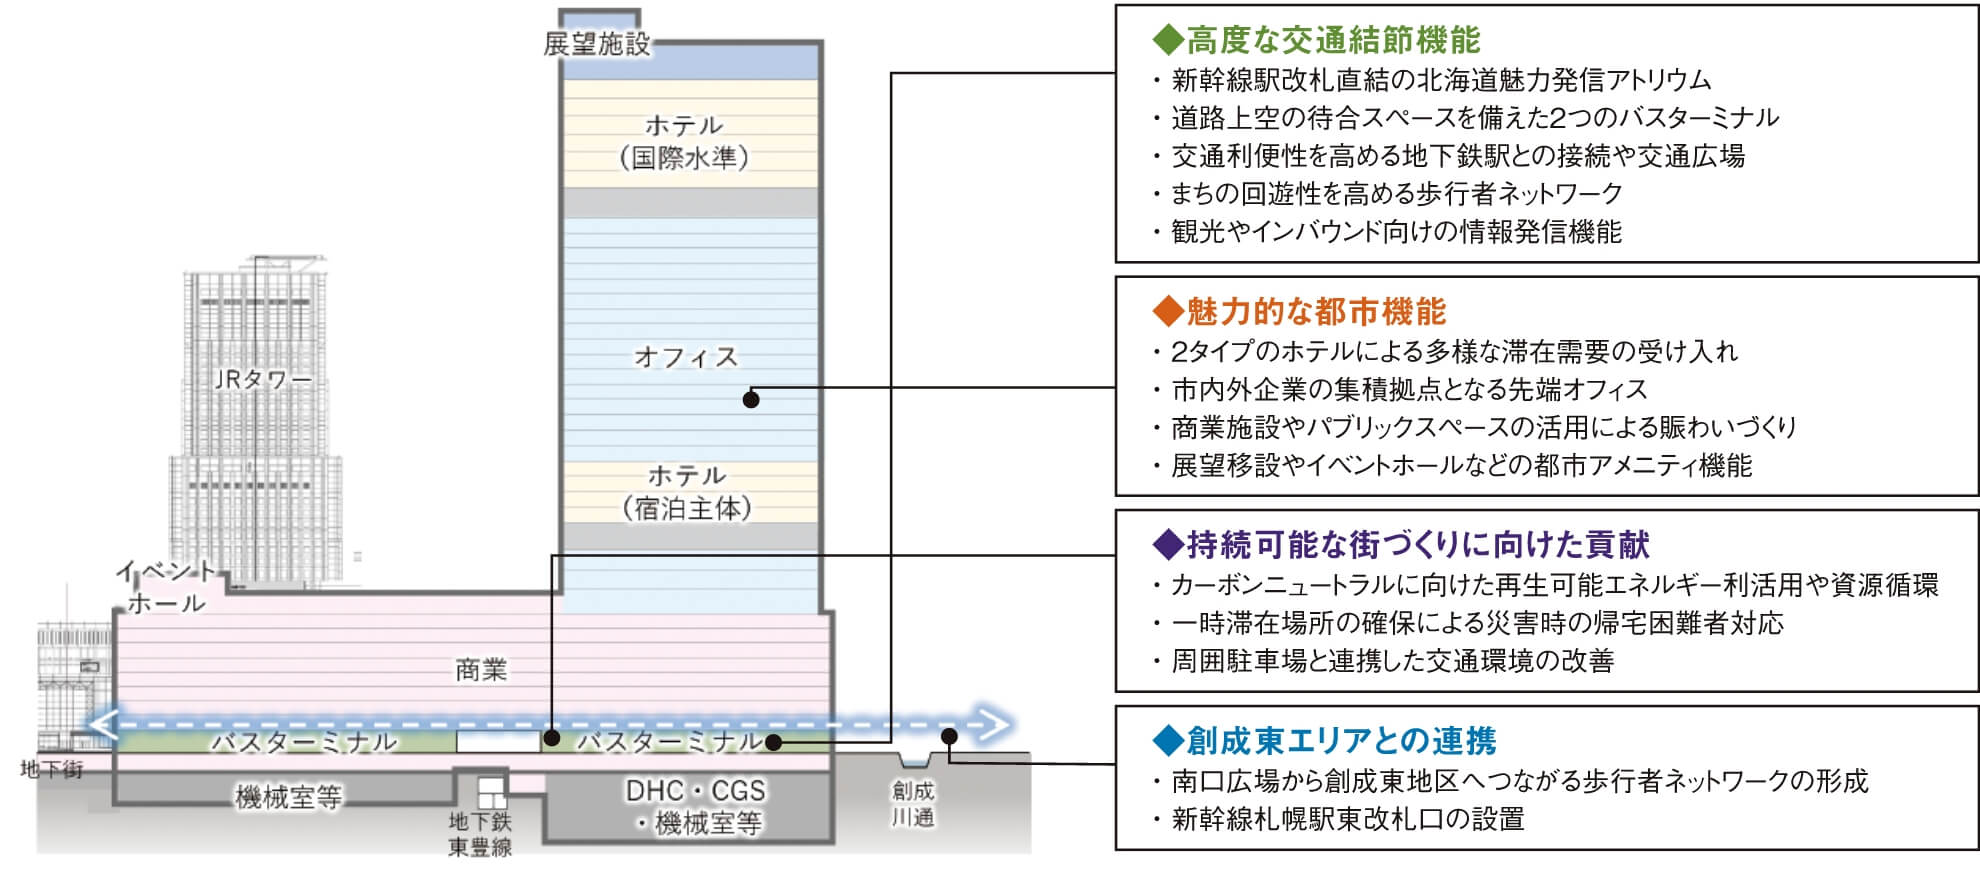 札幌駅周辺開発の想定図